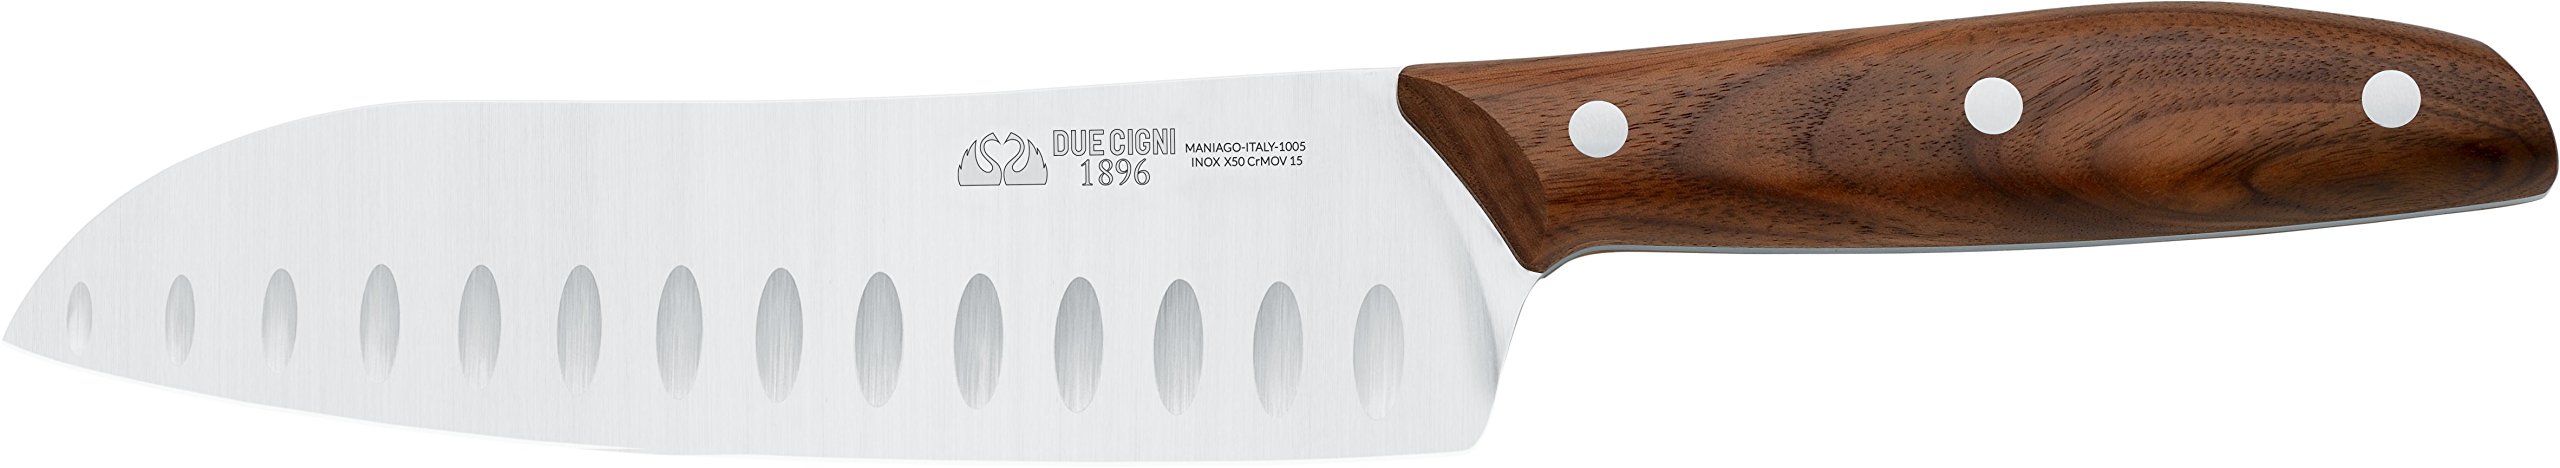 DUE CIGNI Küchenmesser Santoku Serie 1896 Gesamtlänge 31,5 cm Griffbeschalung Walnussholz Art. 2C 1005 No